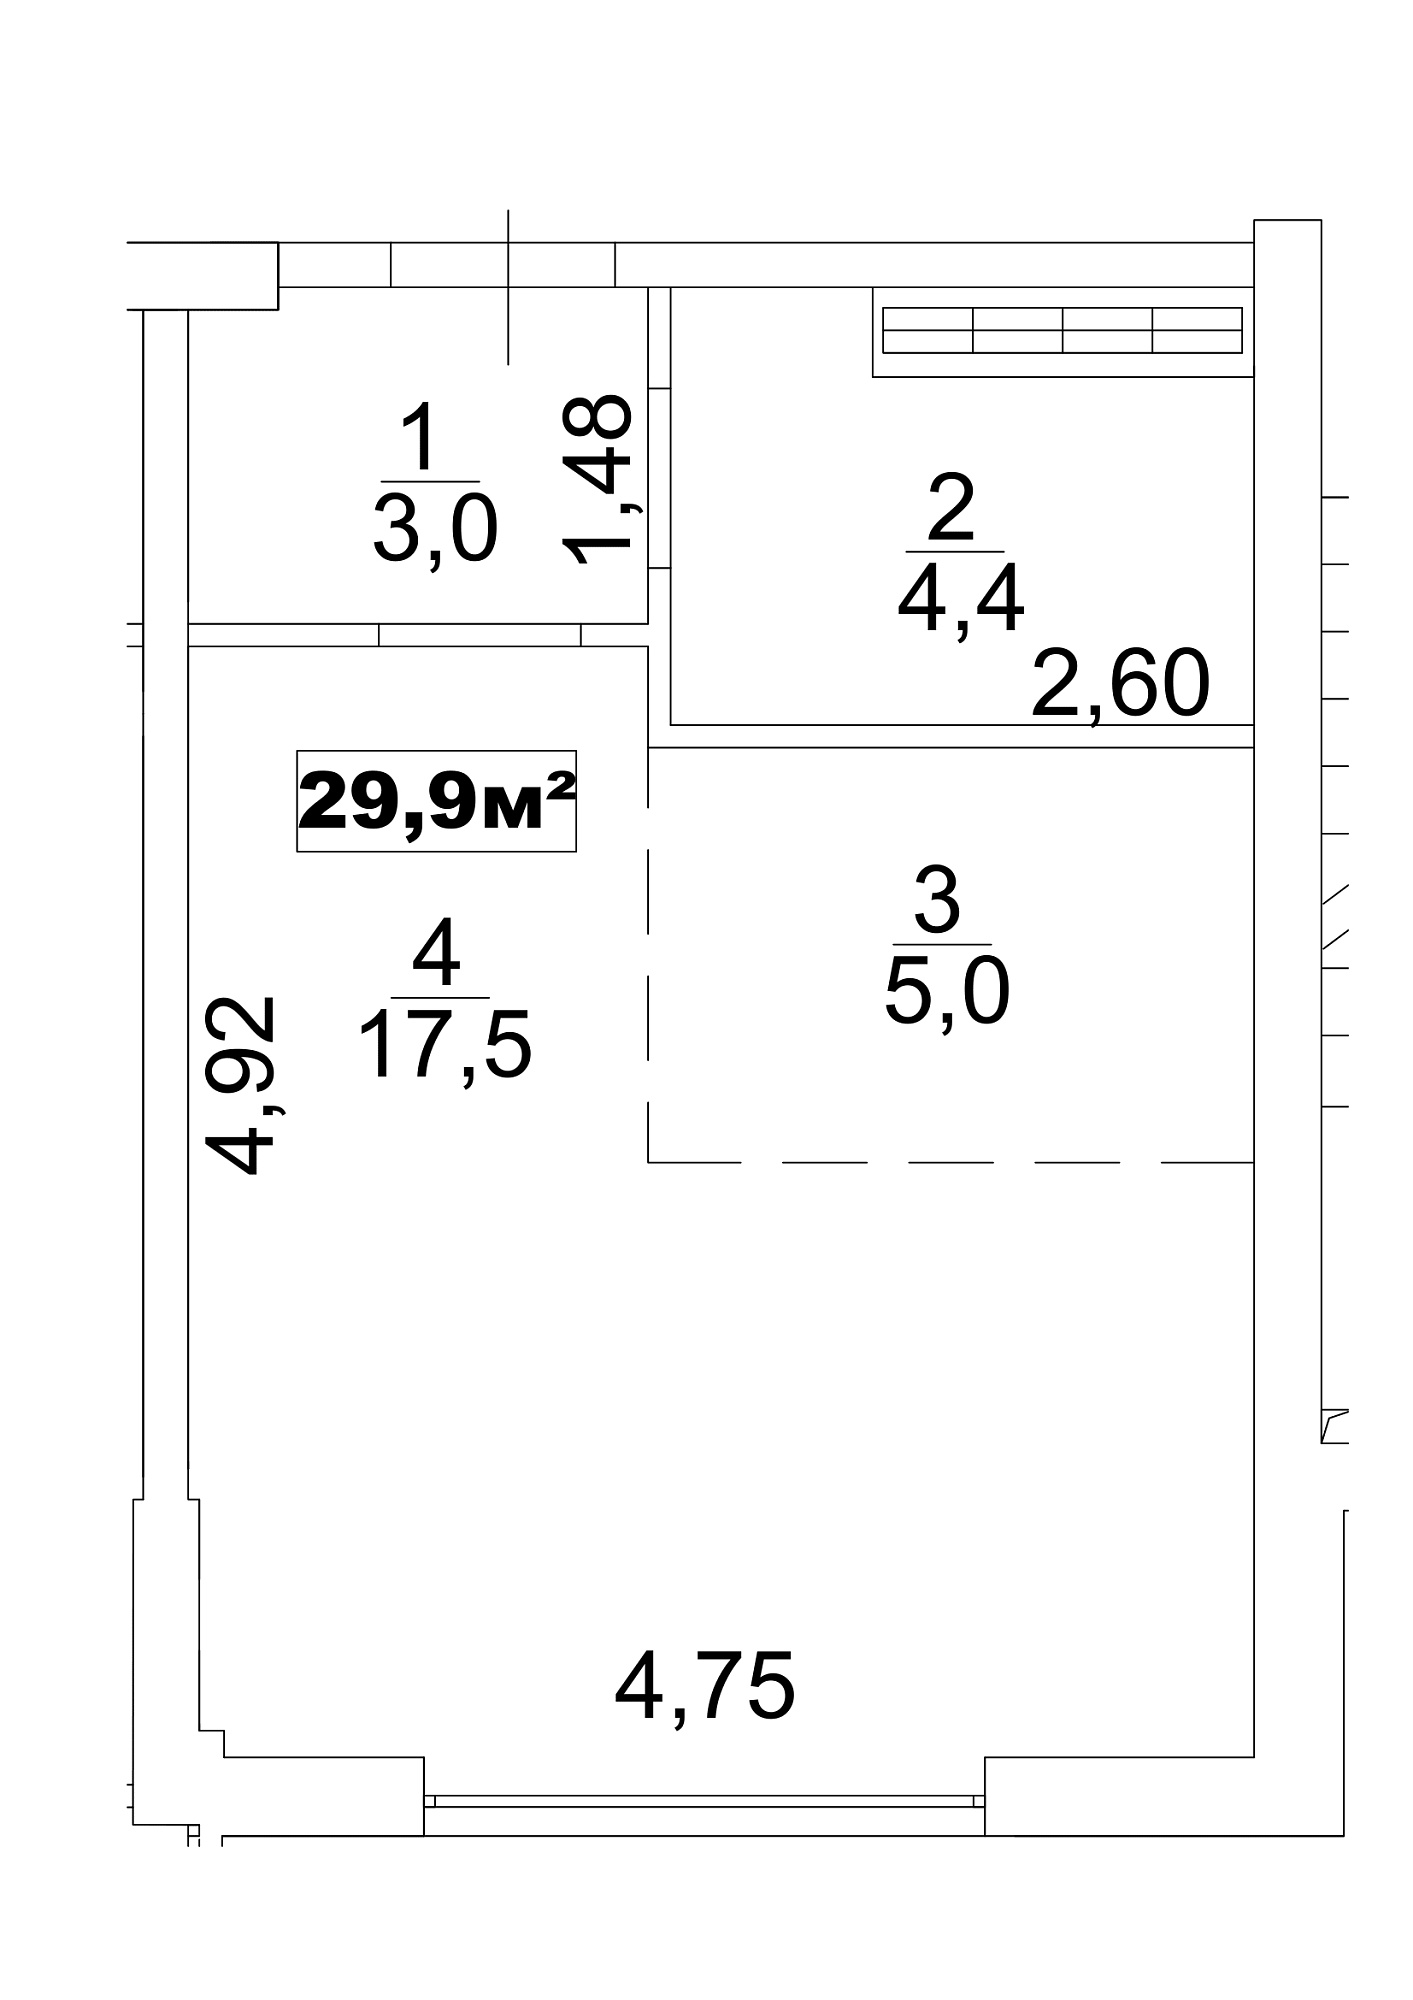 Планировка Smart-квартира площей 29.9м2, AB-13-05/0034а.